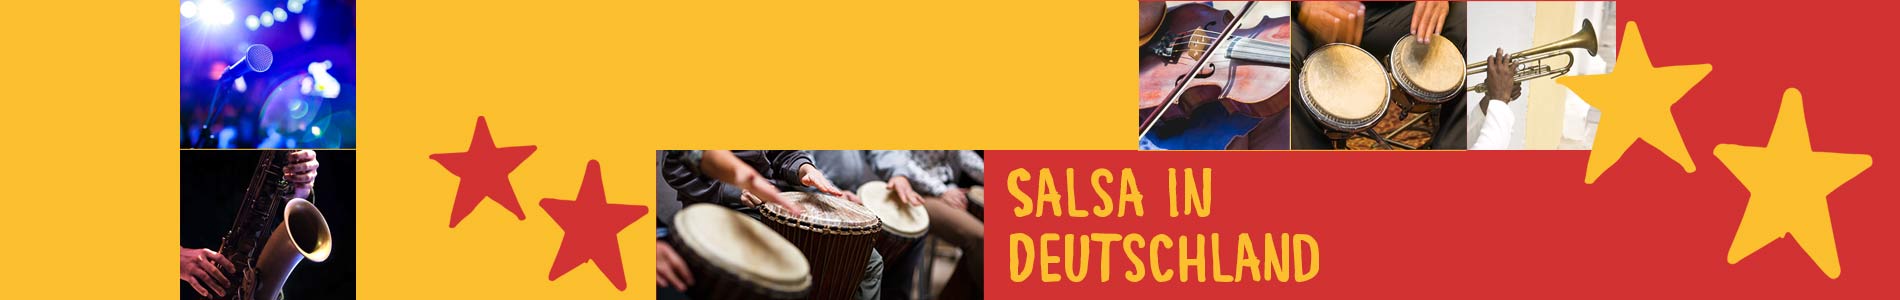 Salsa in Borkwalde – Salsa lernen und tanzen, Tanzkurse, Partys, Veranstaltungen